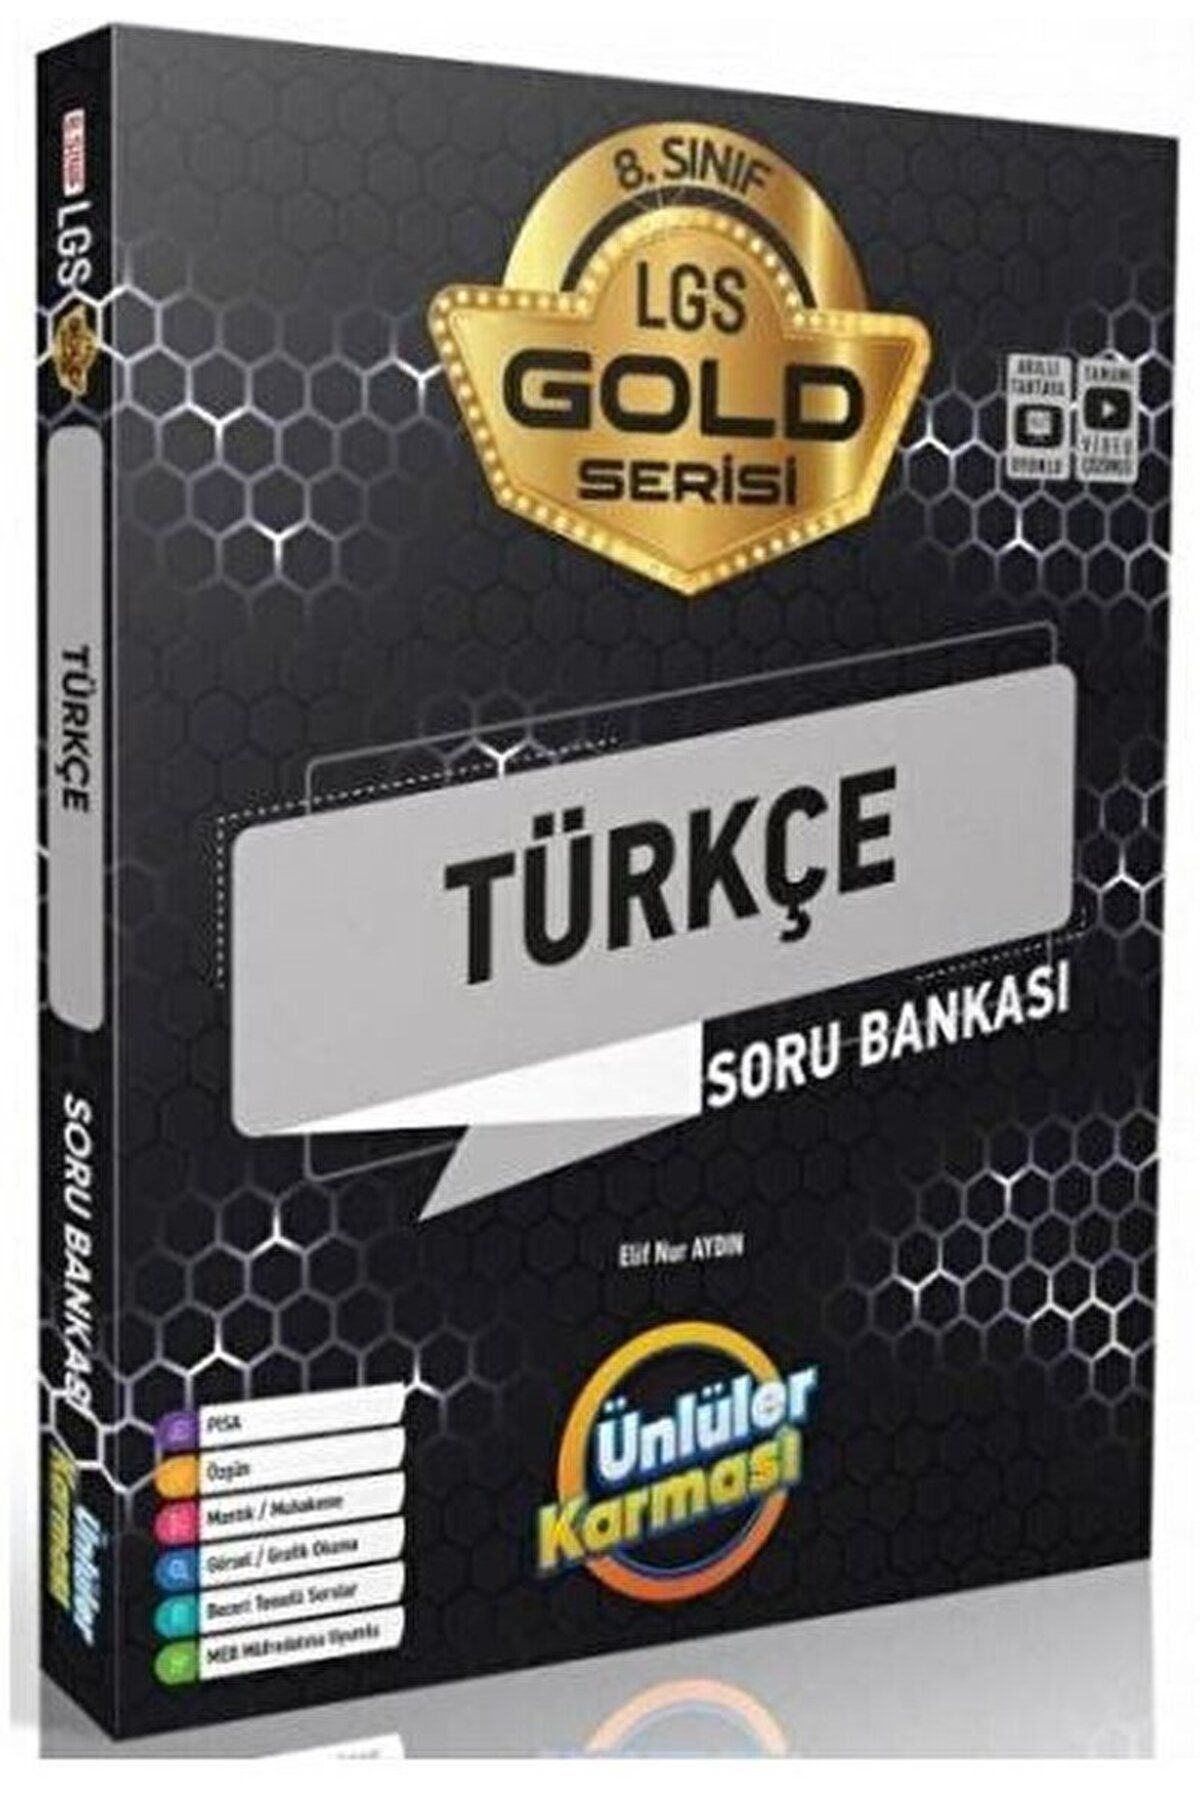 Ünlüler Karması 8. Sınıf LGS Türkçe Gold Serisi Soru Bankası / Elif Nur Aydın / Ünlüler Karması / 9786057077417